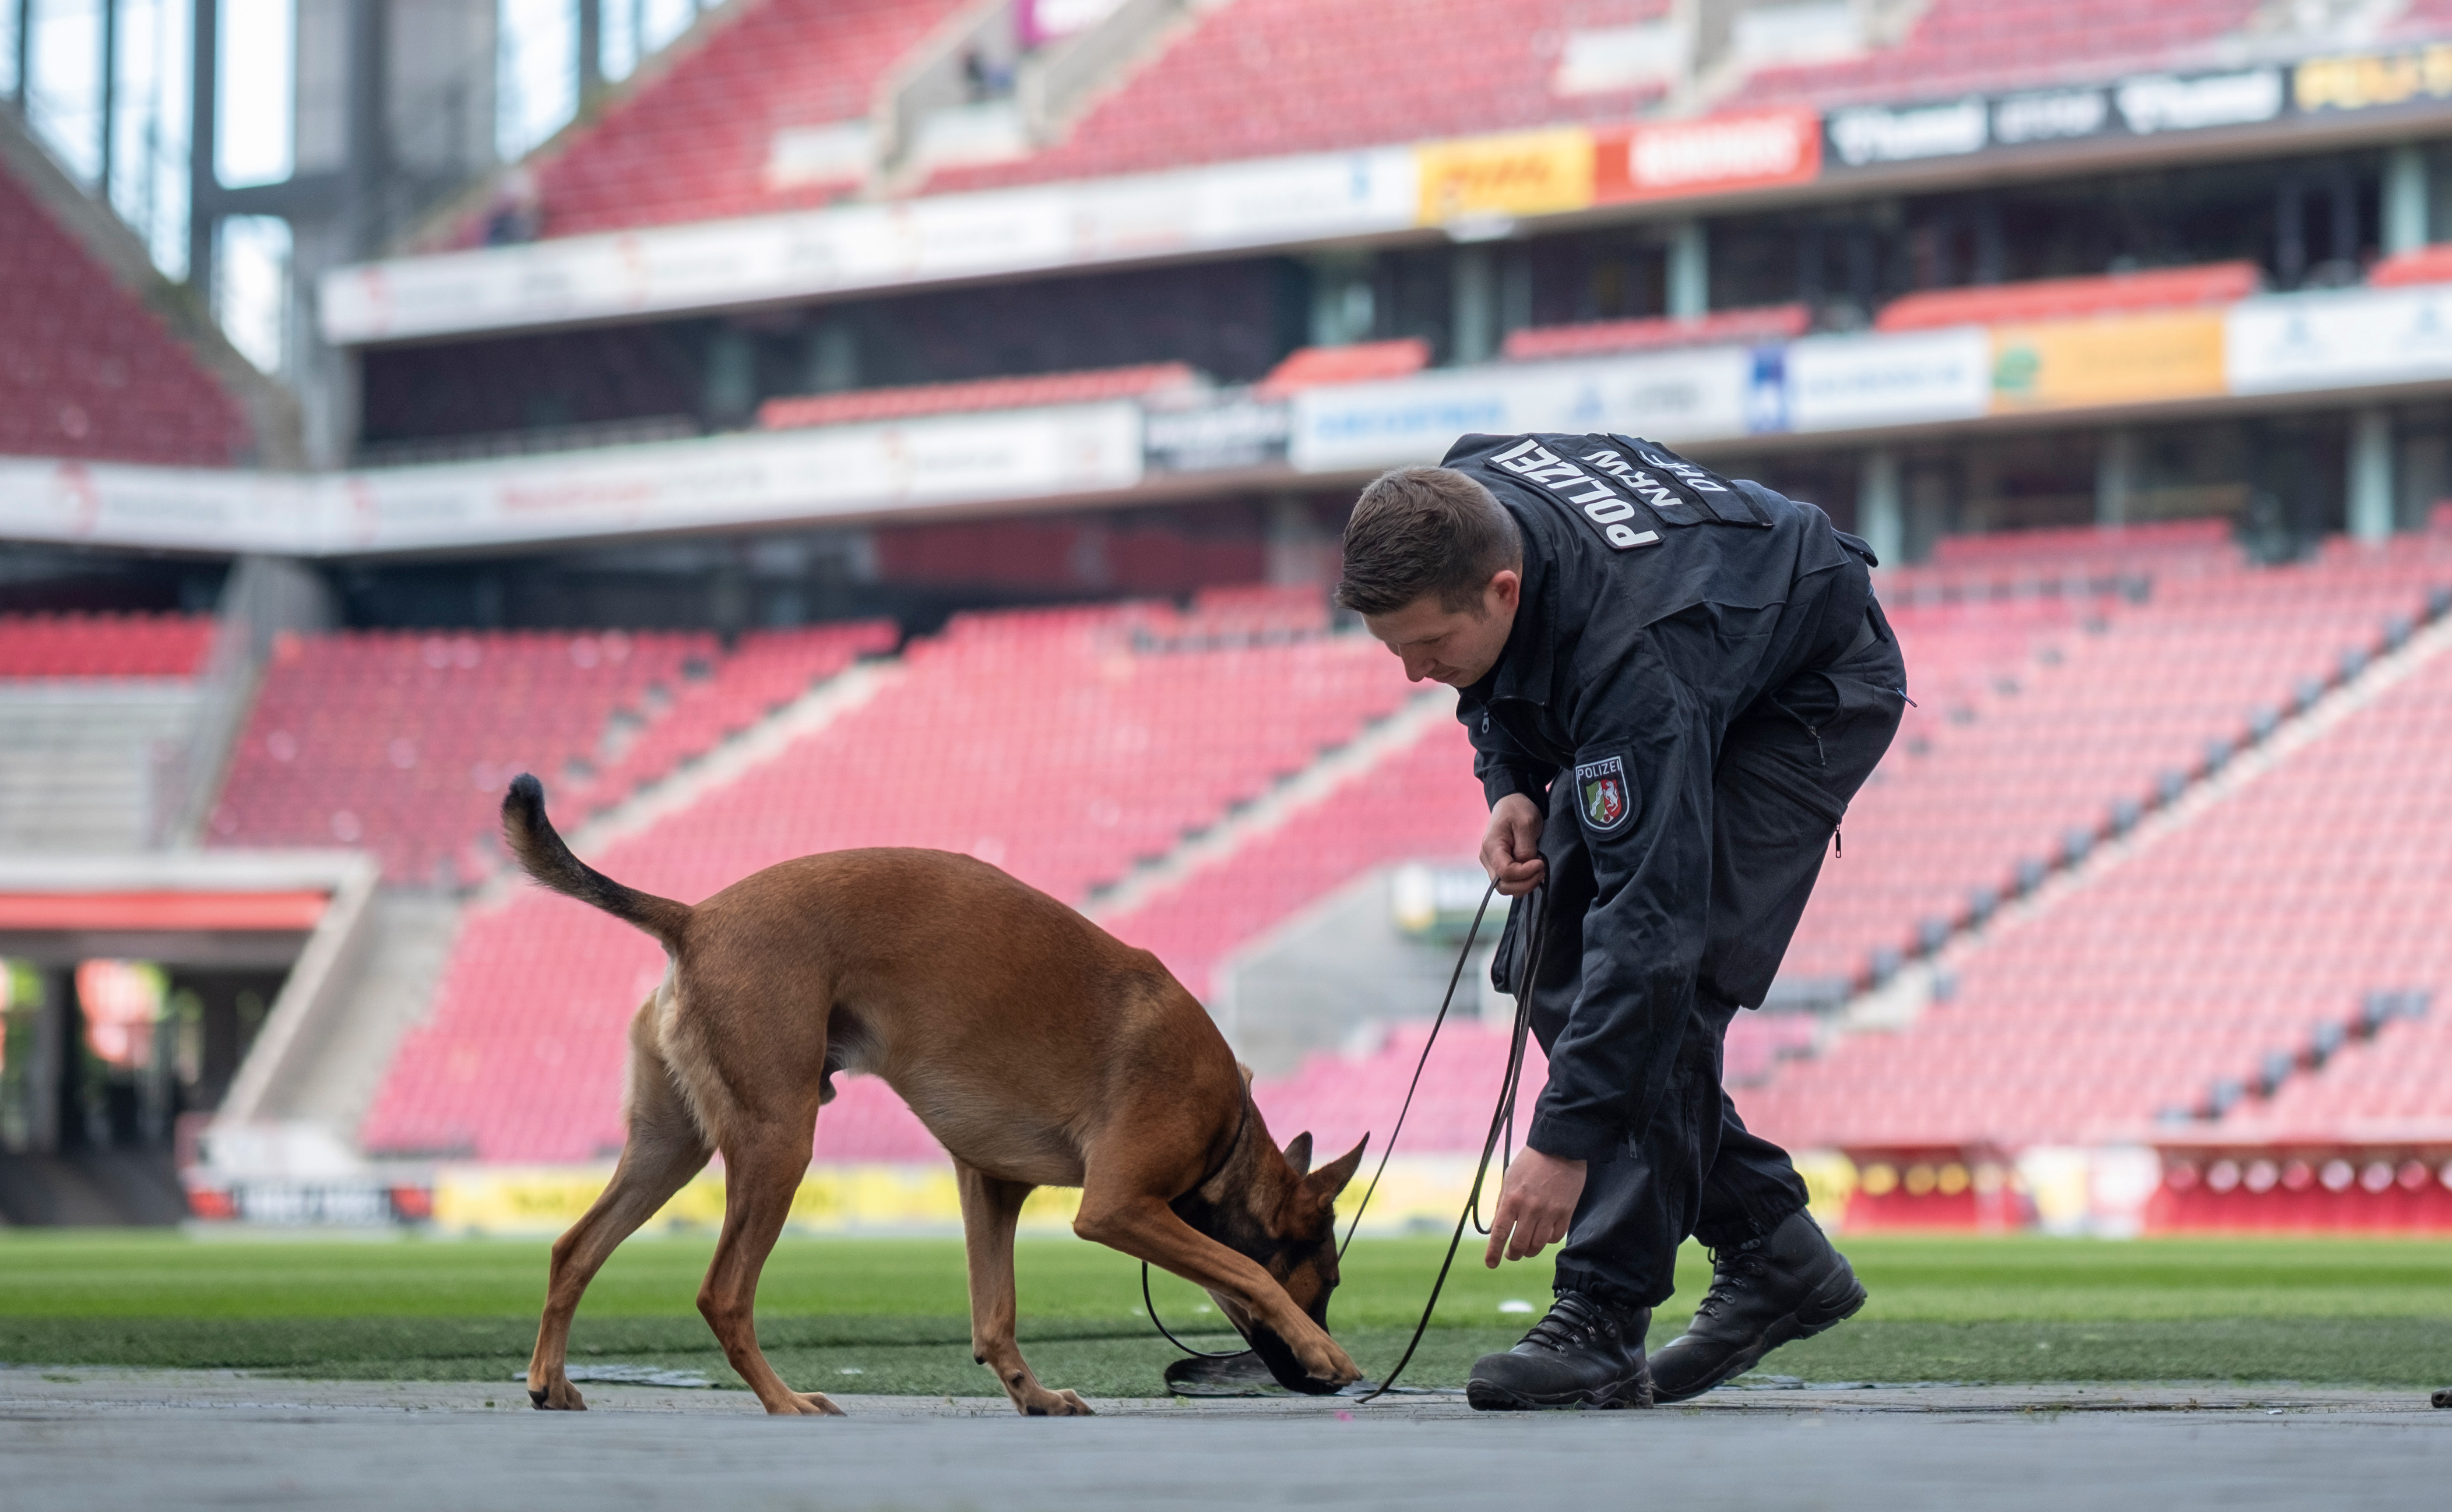 Polizeioberkommissar Pascal M. macht mir Sprengstoffspürhund Loki eine Übung im RheinEnergieStadion. Sie befinden sich auf dem Fußballfeld. Loki erschnüffelt etwas auf dem Boden.